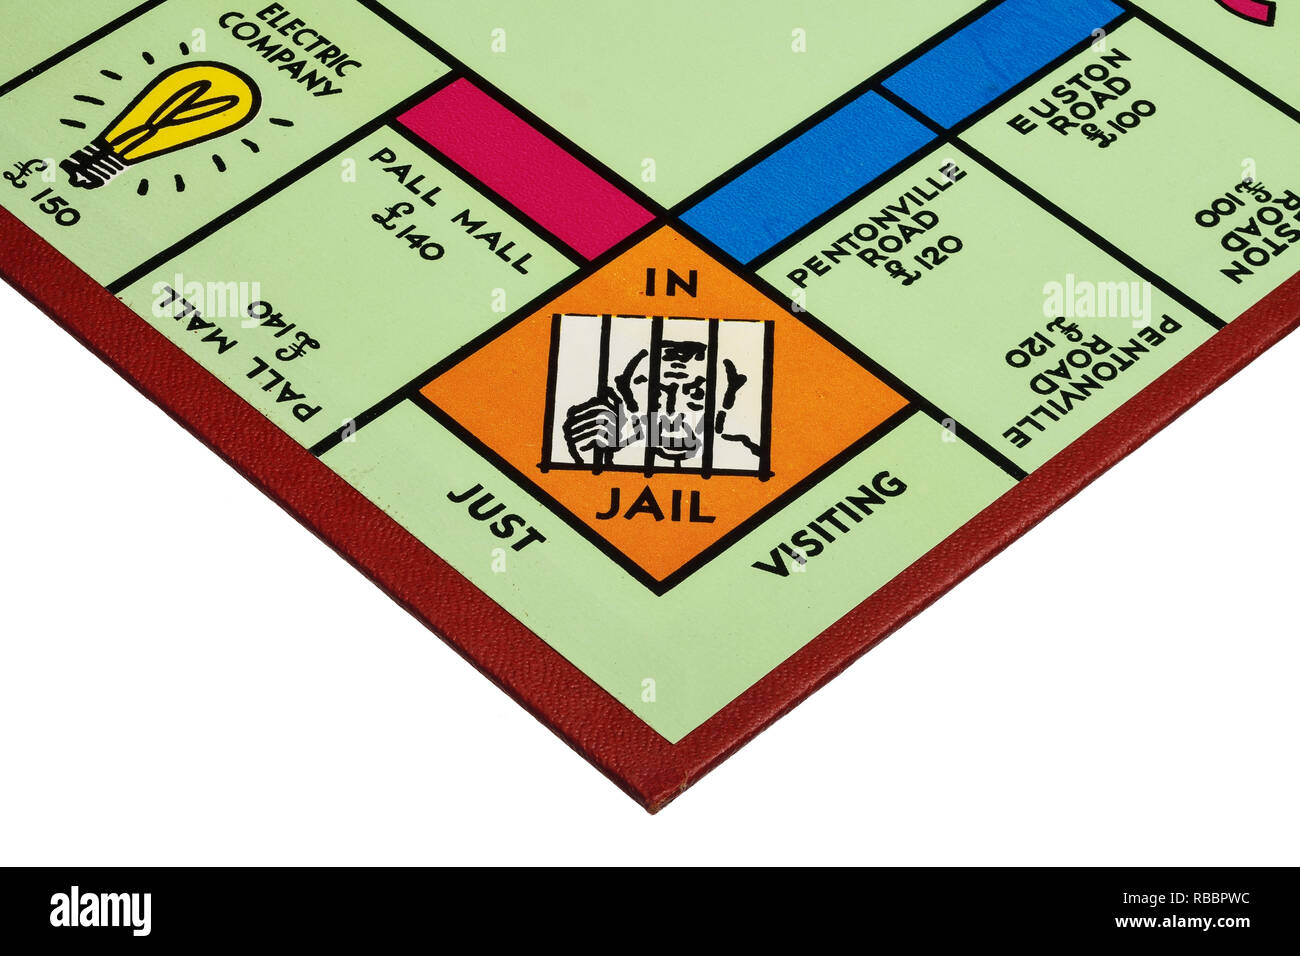 Close up dettaglio di un angolo del campo di gioco per il gioco del Monopoli che mostra in carcere e soltanto in visita Foto Stock